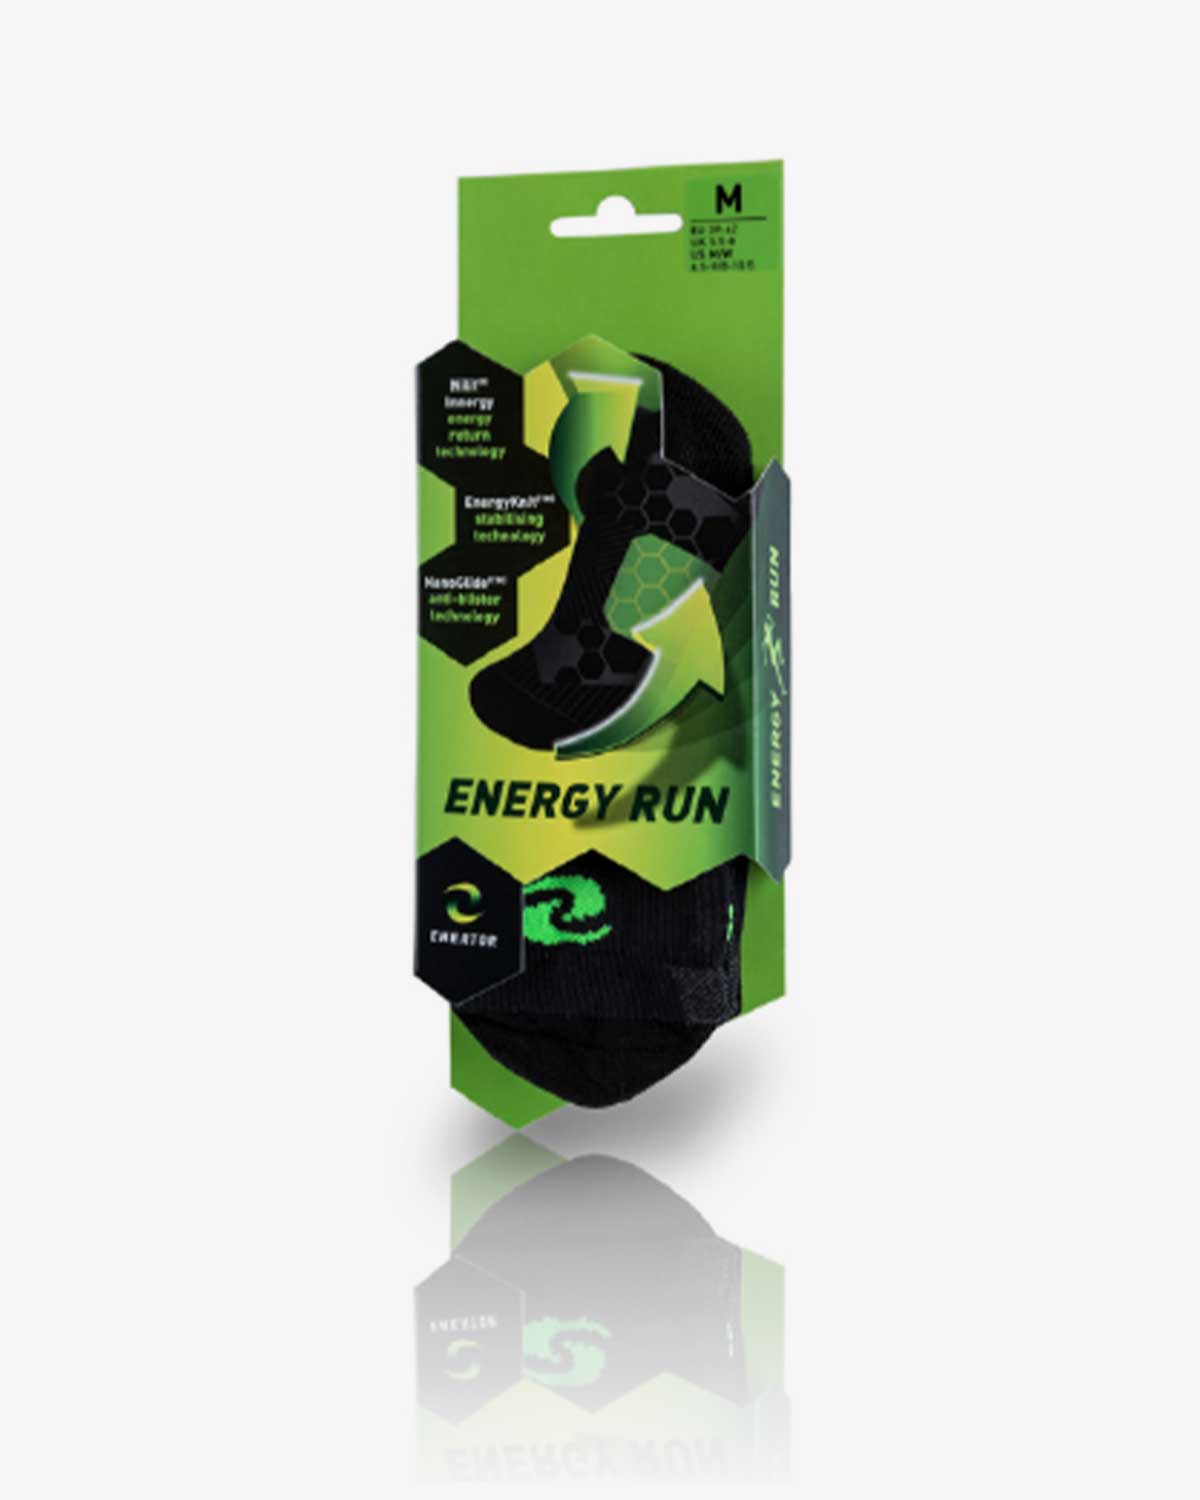 Enertor Specialist Running Socks Packaging